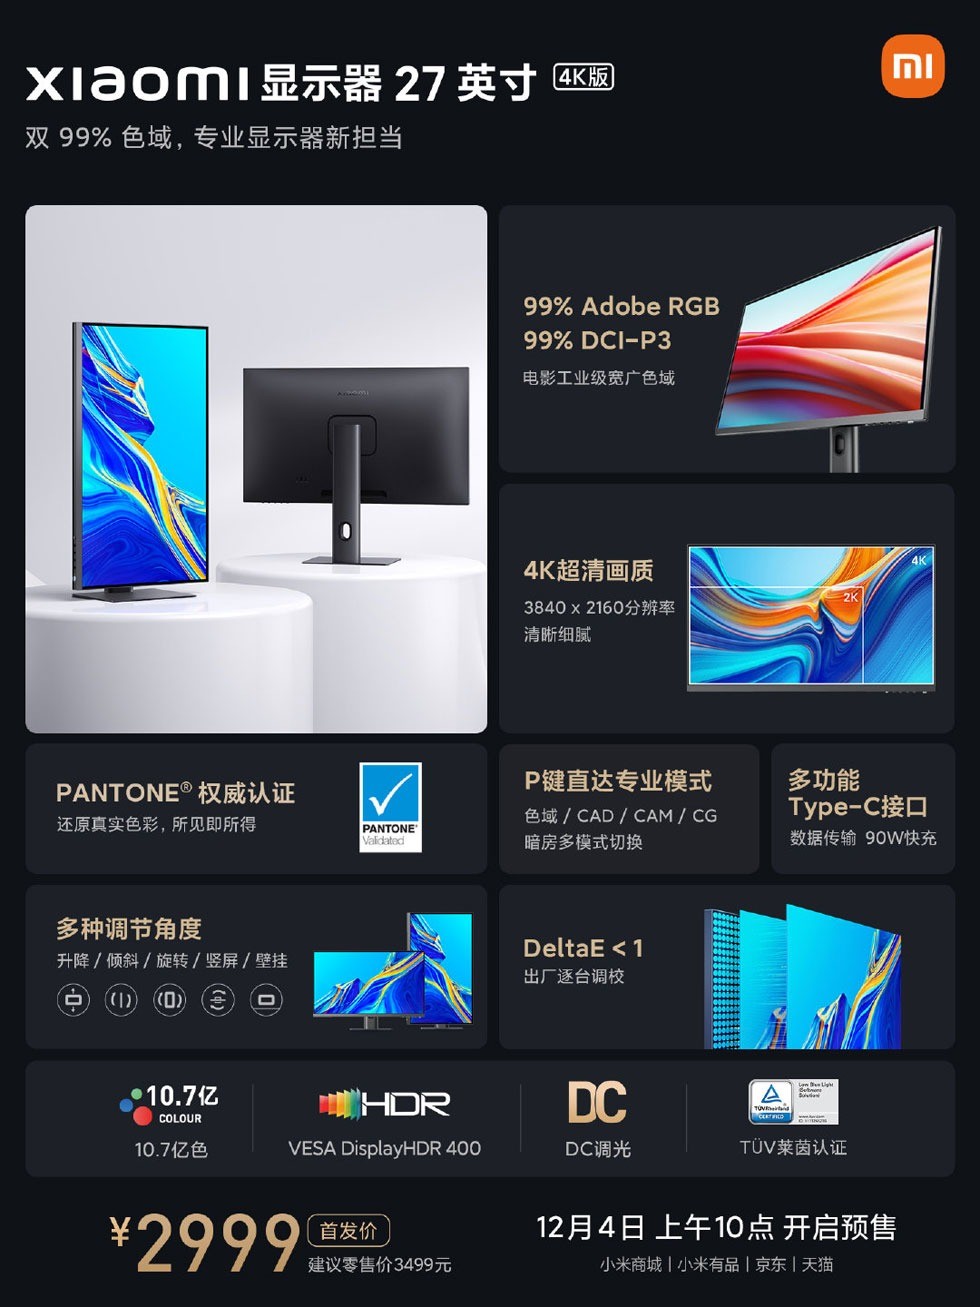 Màn hình Xiaomi 27 inch 4K ra mắt: màu sắc chính xác, USB-C, giá 10.7 triệu đồng ảnh 6